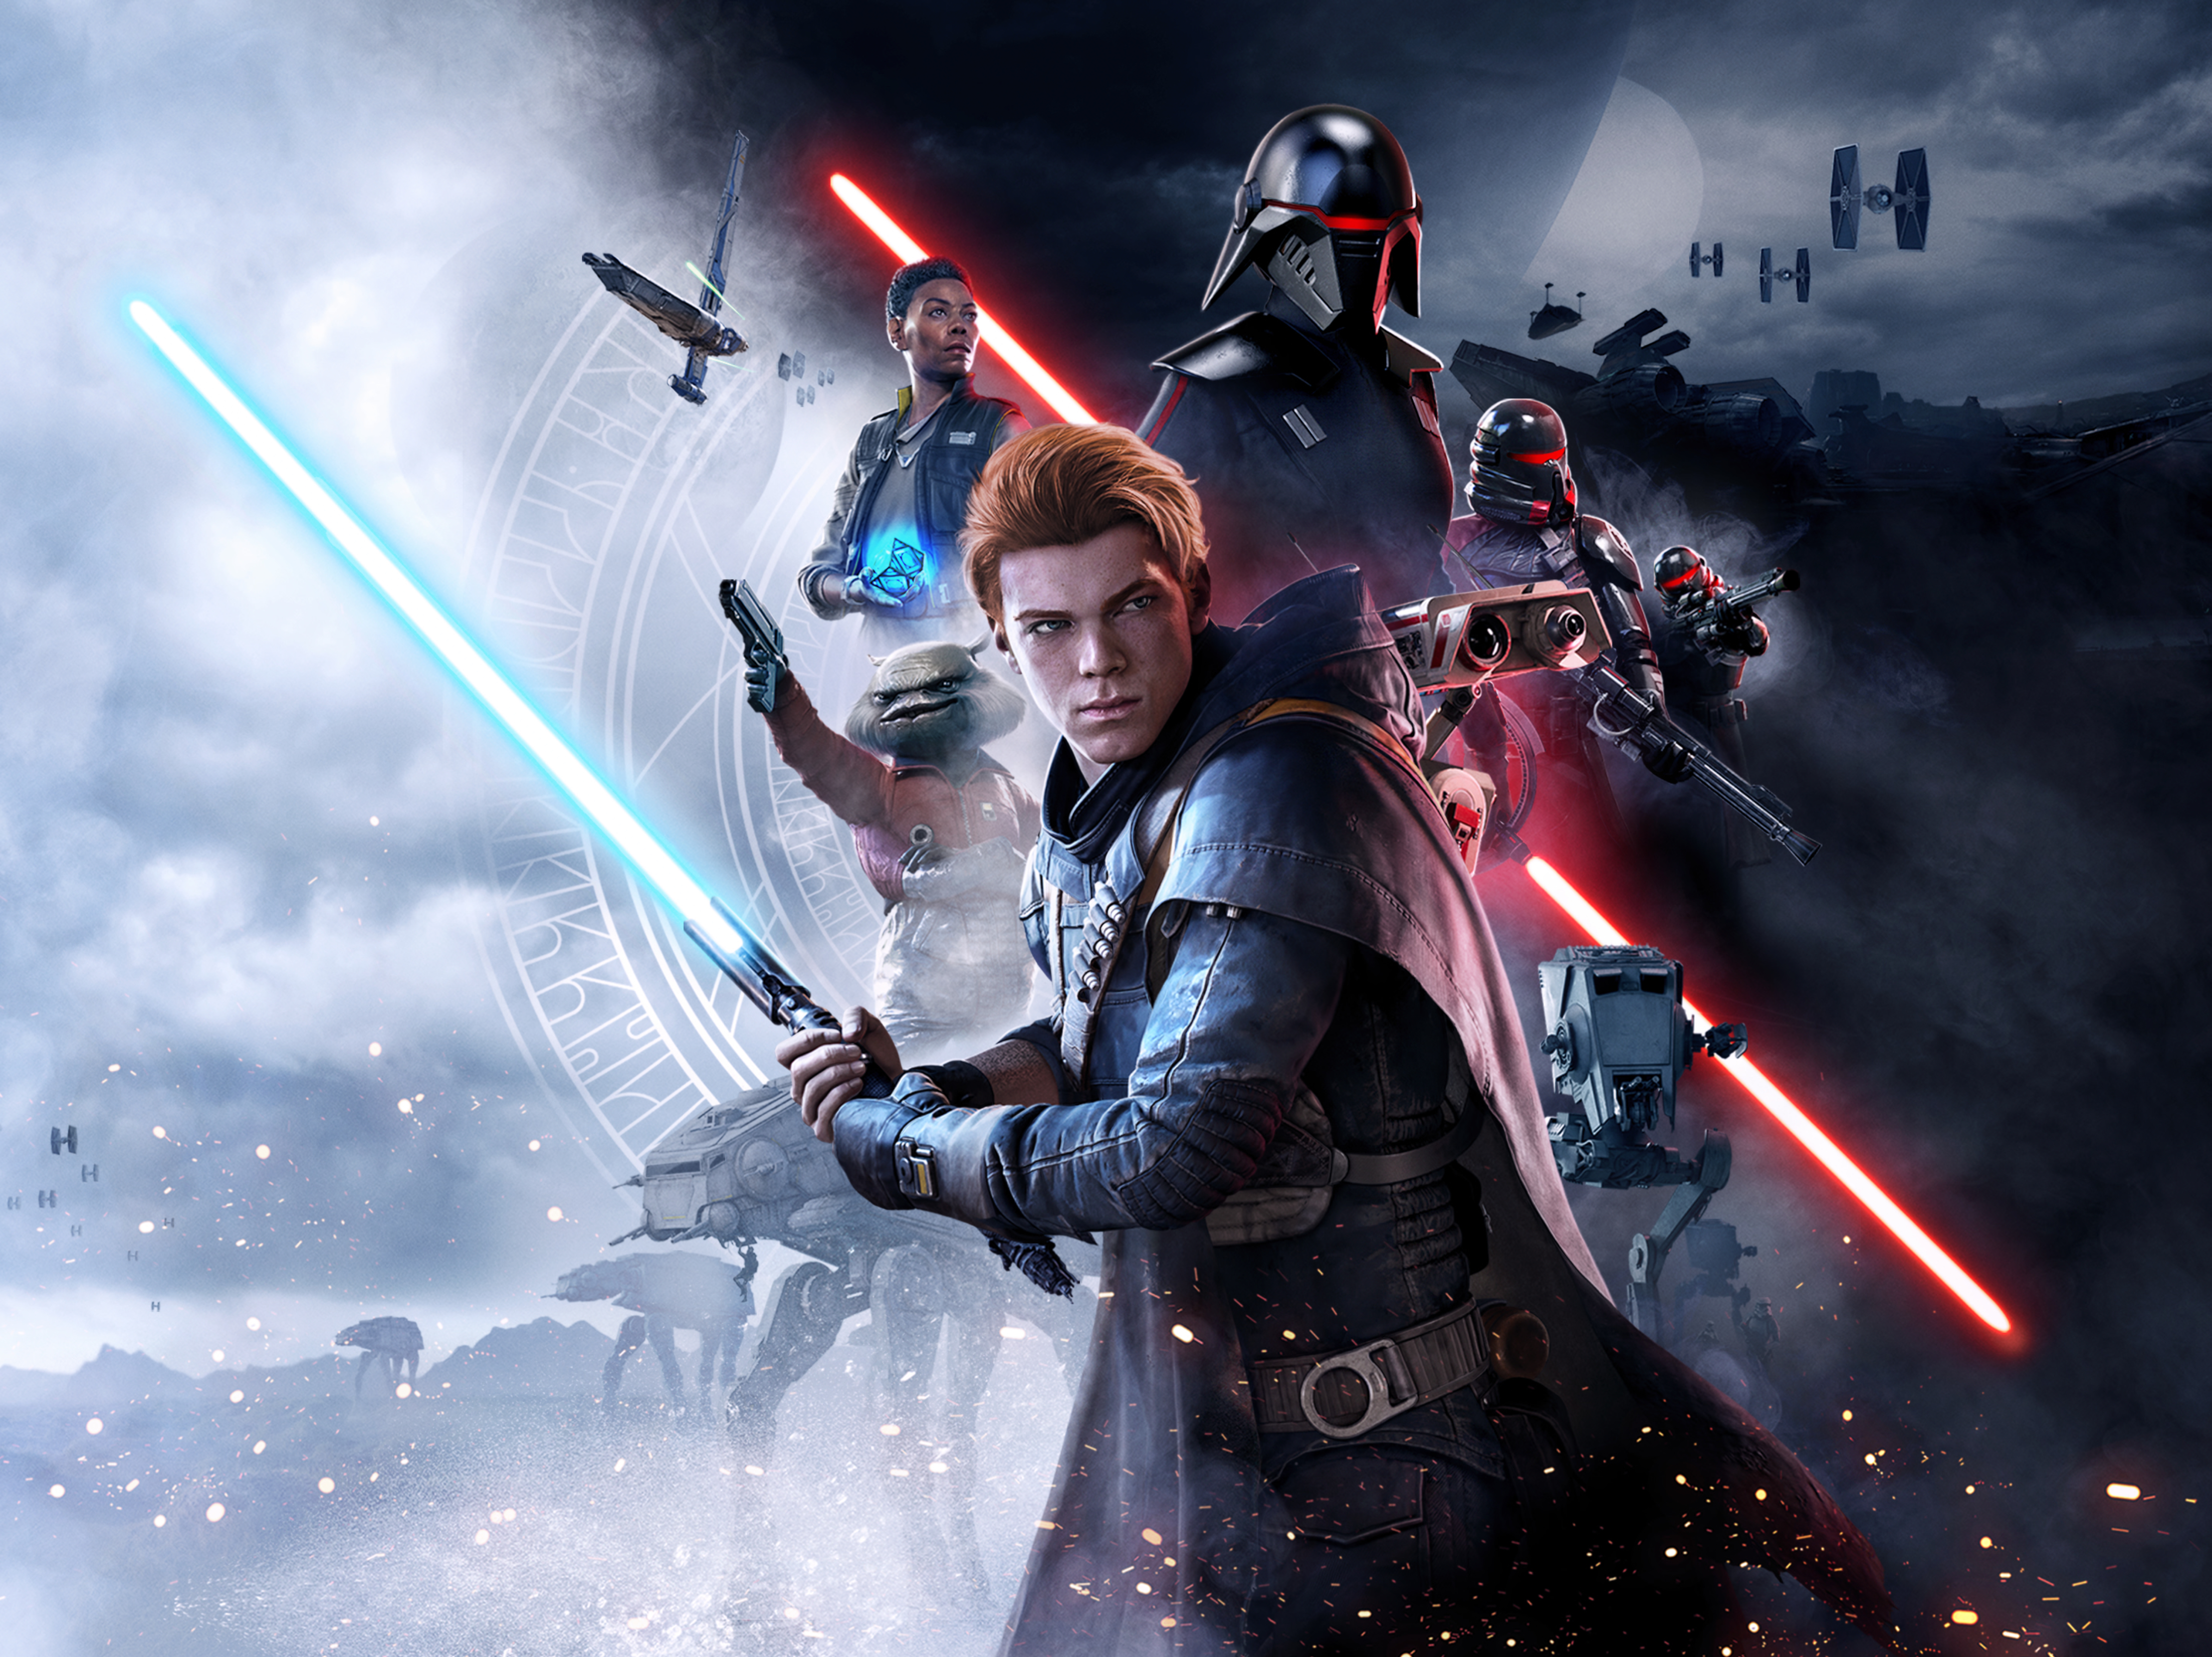 Star Wars Jedi: Fallen Order to get free next-gen console upgrade this summer